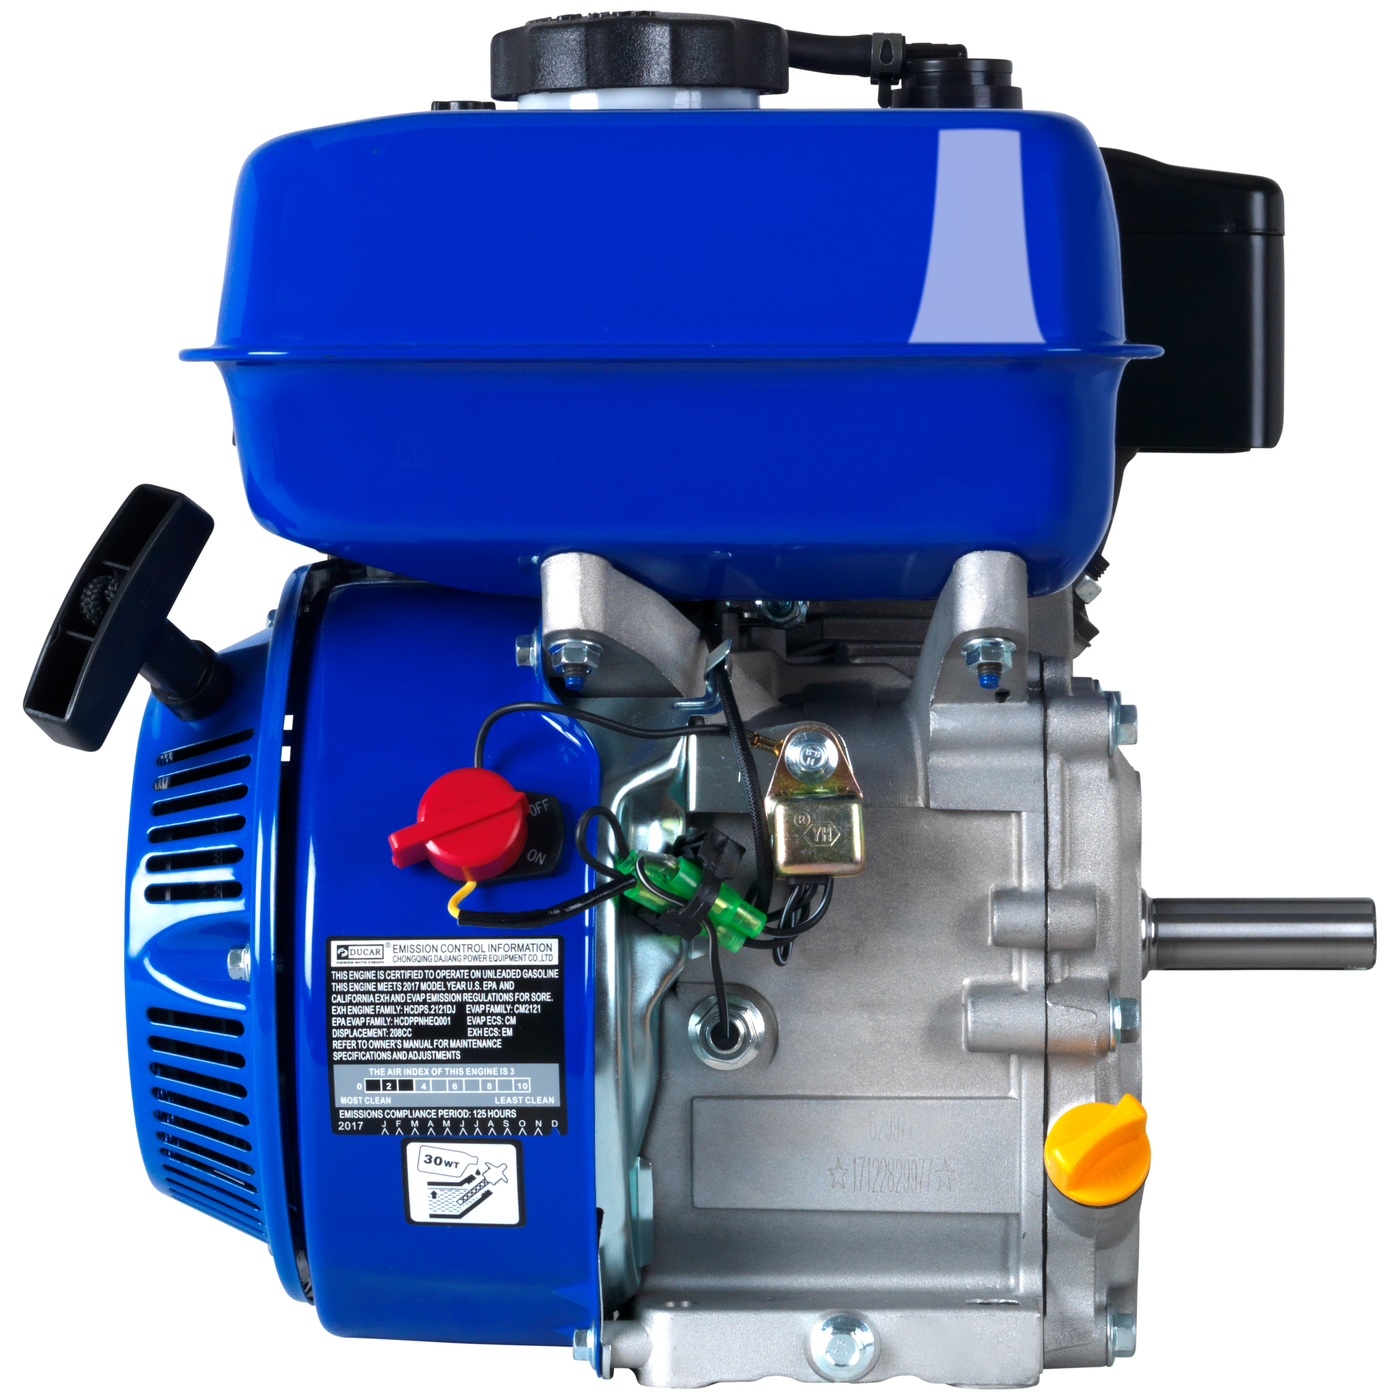 DuroMax  208cc 3/4-Inch Shaft Recoil Start Gasoline Engine